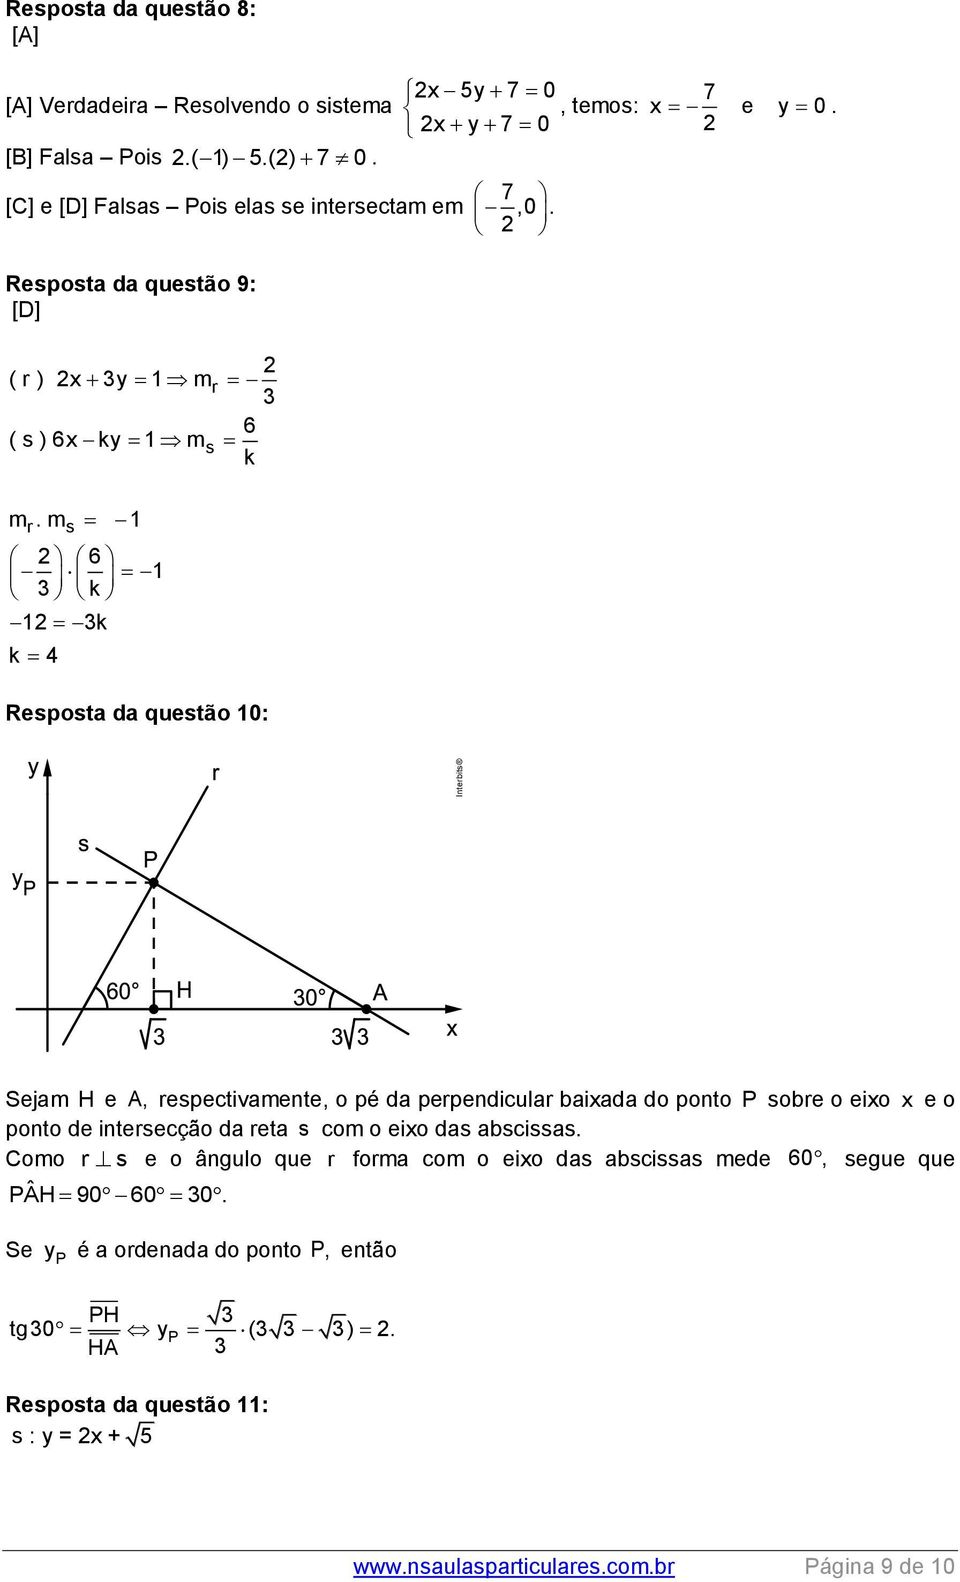 m s 1 6 1 3 k 1 3k k 4 Resposta da questão 10: Sejam H e A, respectivamente, o pé da perpendicular baixada do ponto P sobre o eixo x e o ponto de intersecção da reta s com